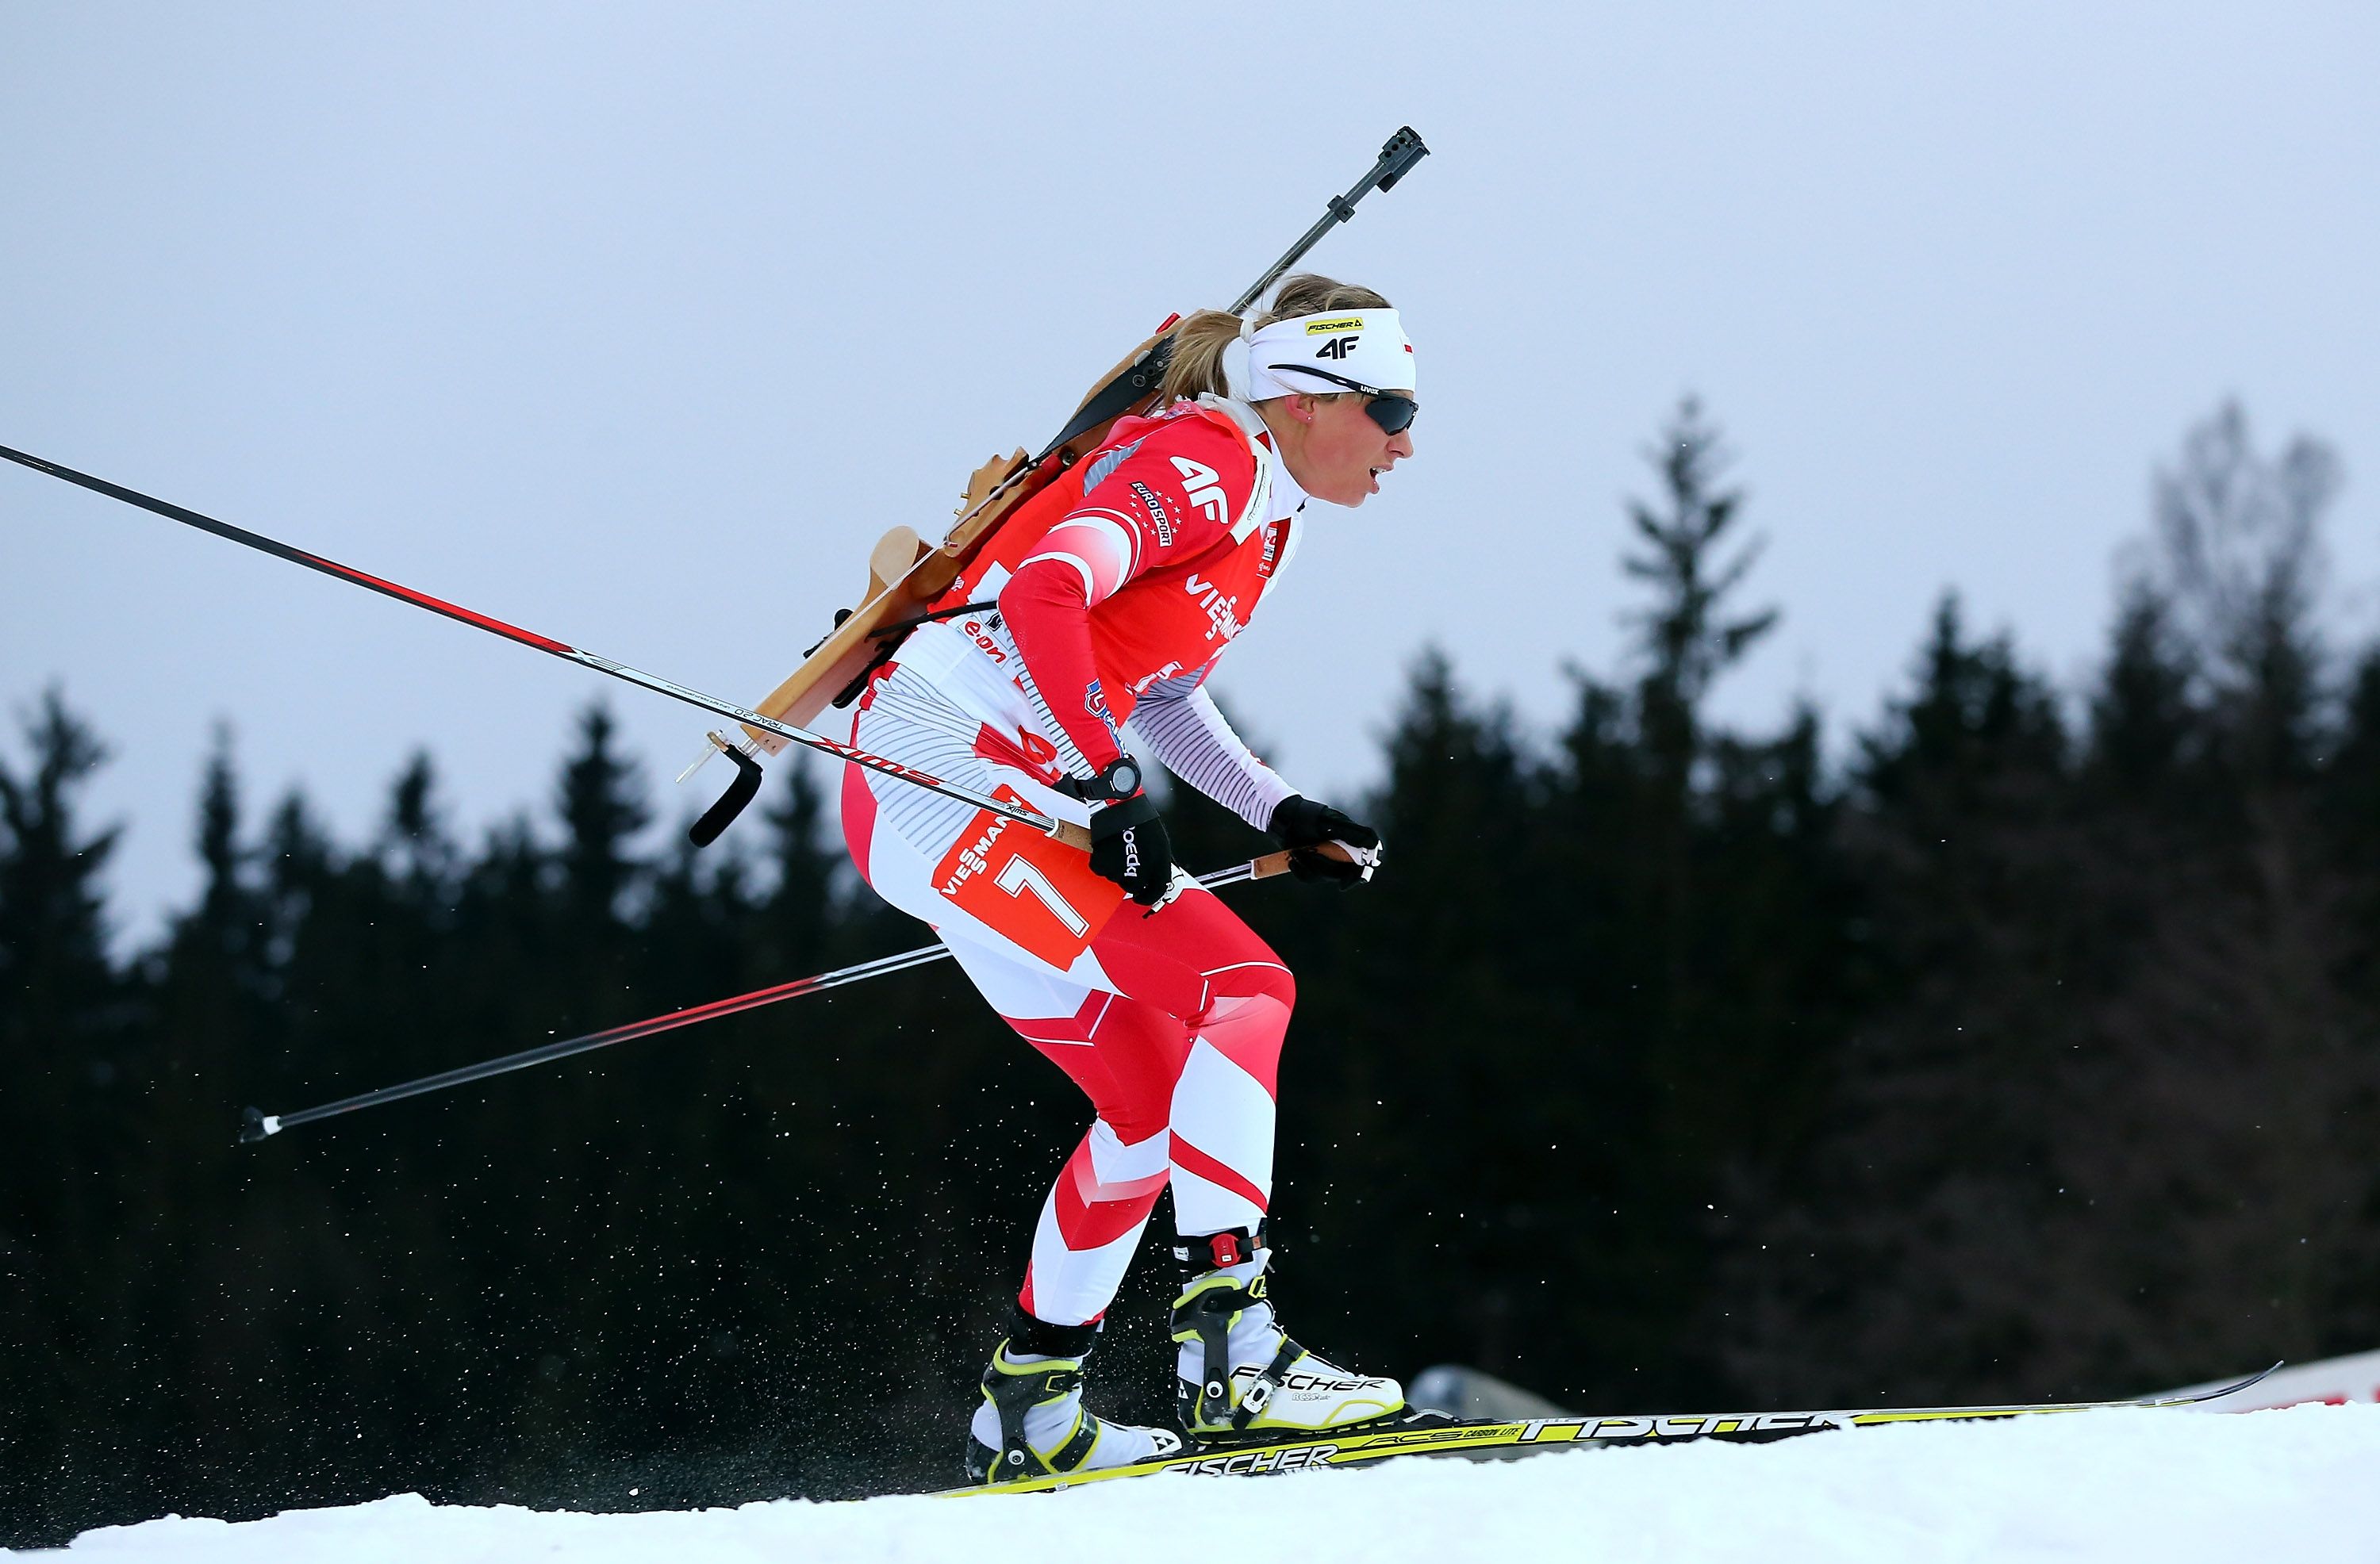 W sezonie 2013/2014 Eurosport będzie transmitował wszystkie zawody Pucharu Świata w biathlonie. Widzowie kanału będą mogli śledzić na żywo zmagania kobiet i mężczyzn w Oestersund, Hochfilzen, Annecy-Le Grand Bornand, Oberhofie, Ruhpolding, Anterselvie, Pokljuce, Kontiolahti i Oslo. Łącznie Eurosport zapewni ponad […]